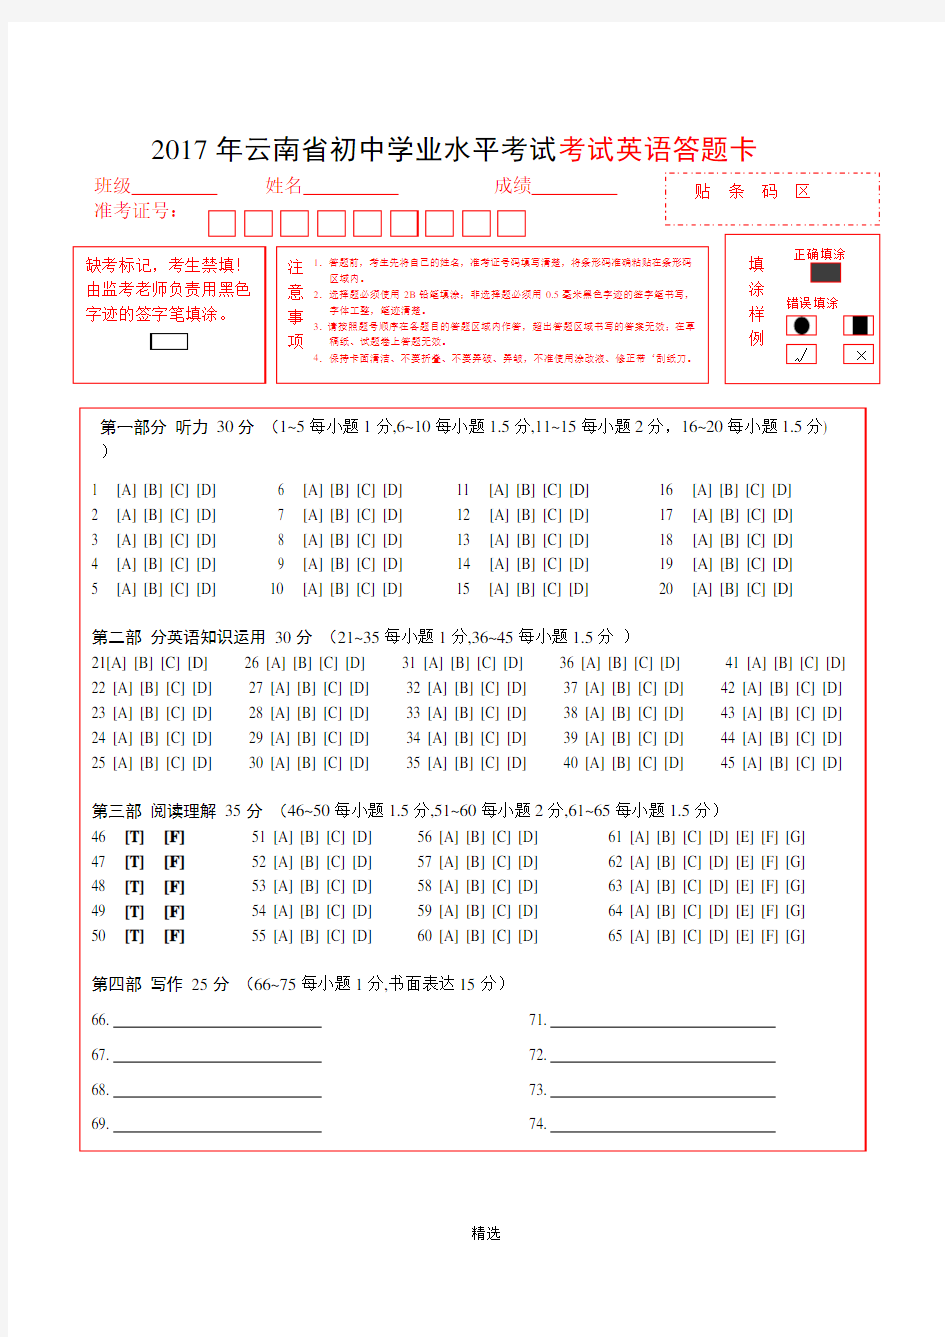 2018年云南英语中考答题卡(修改版 7.5)